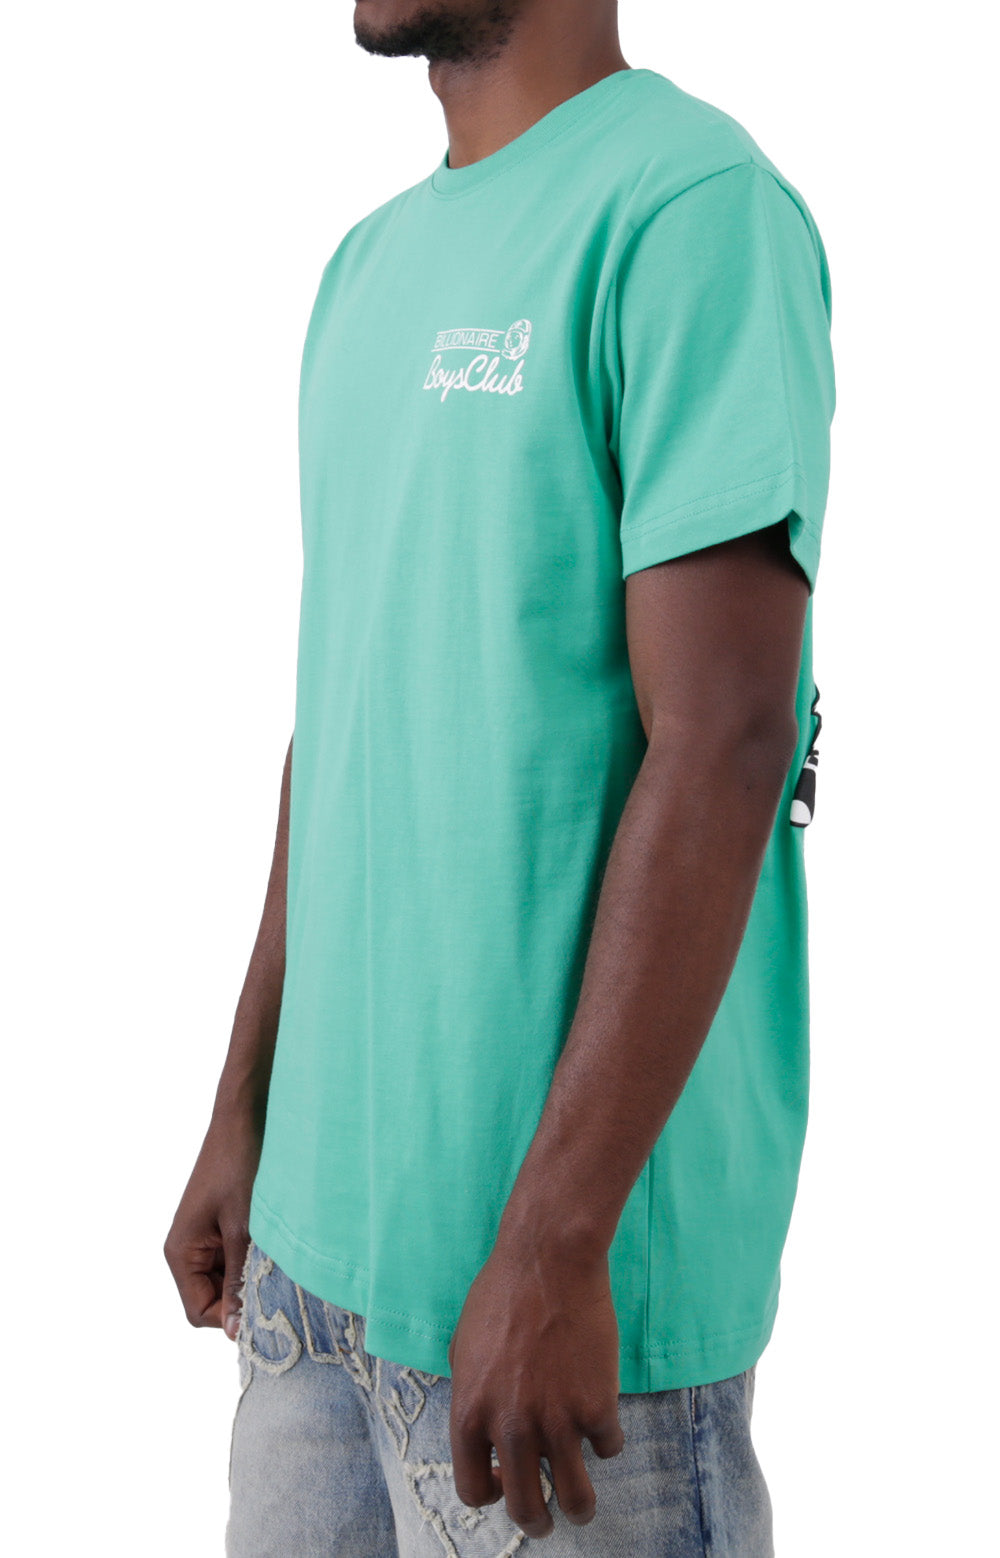 BB Mirage T-Shirt - Gumdrop Green